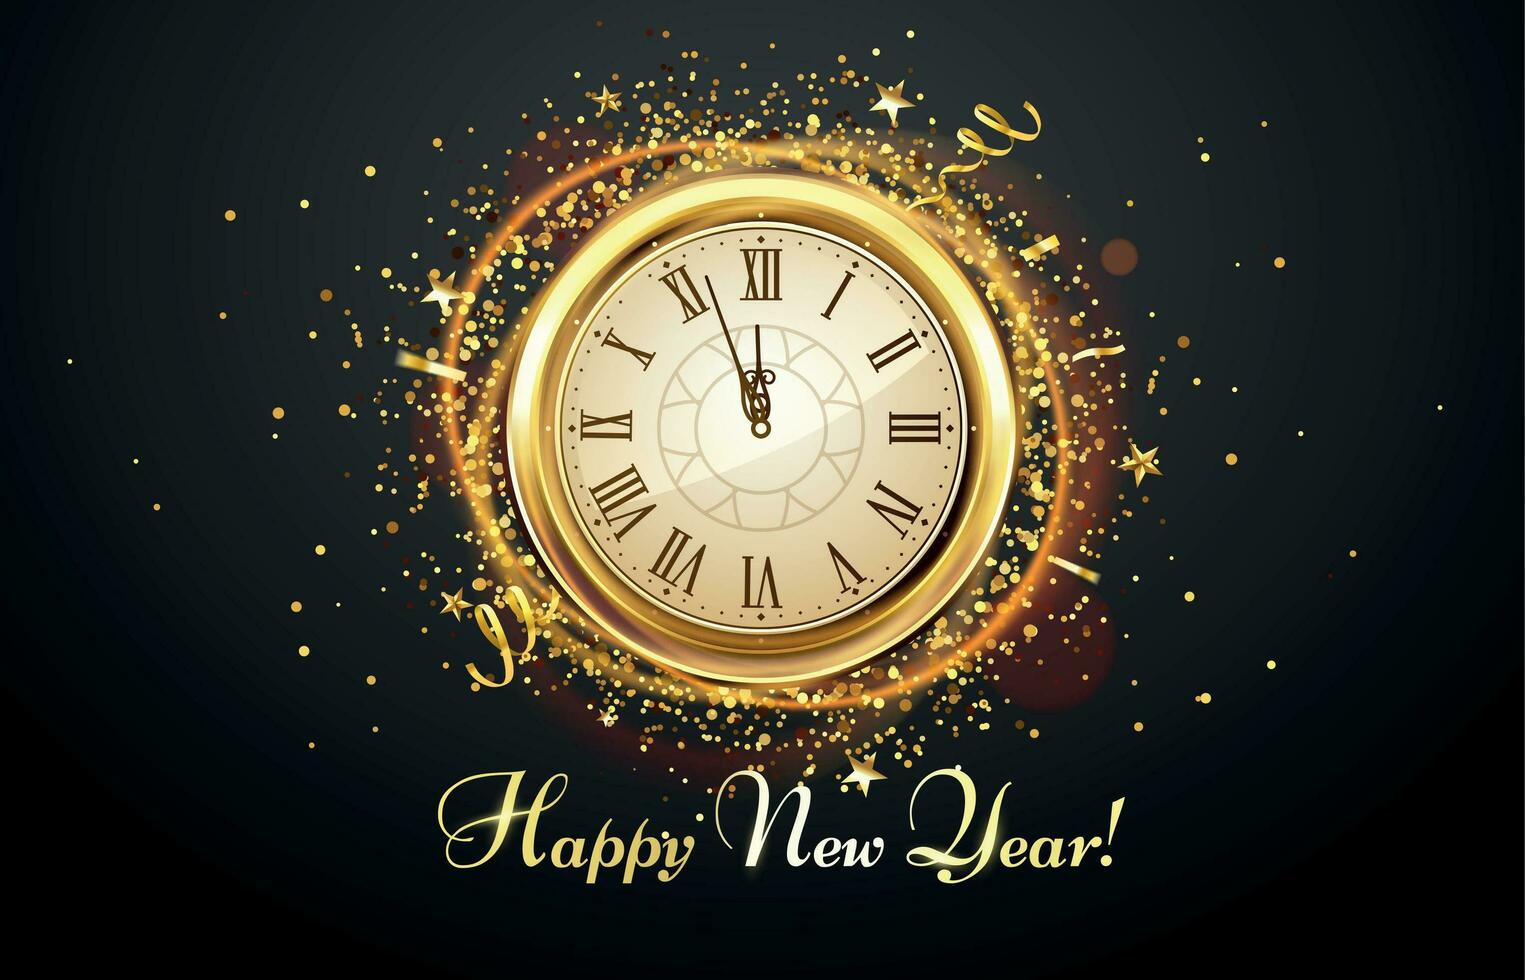 nuovo anno conto alla rovescia guarda. vacanza antico orologio con d'oro coriandoli, contento nuovo anno saluto carta vettore illustrazione